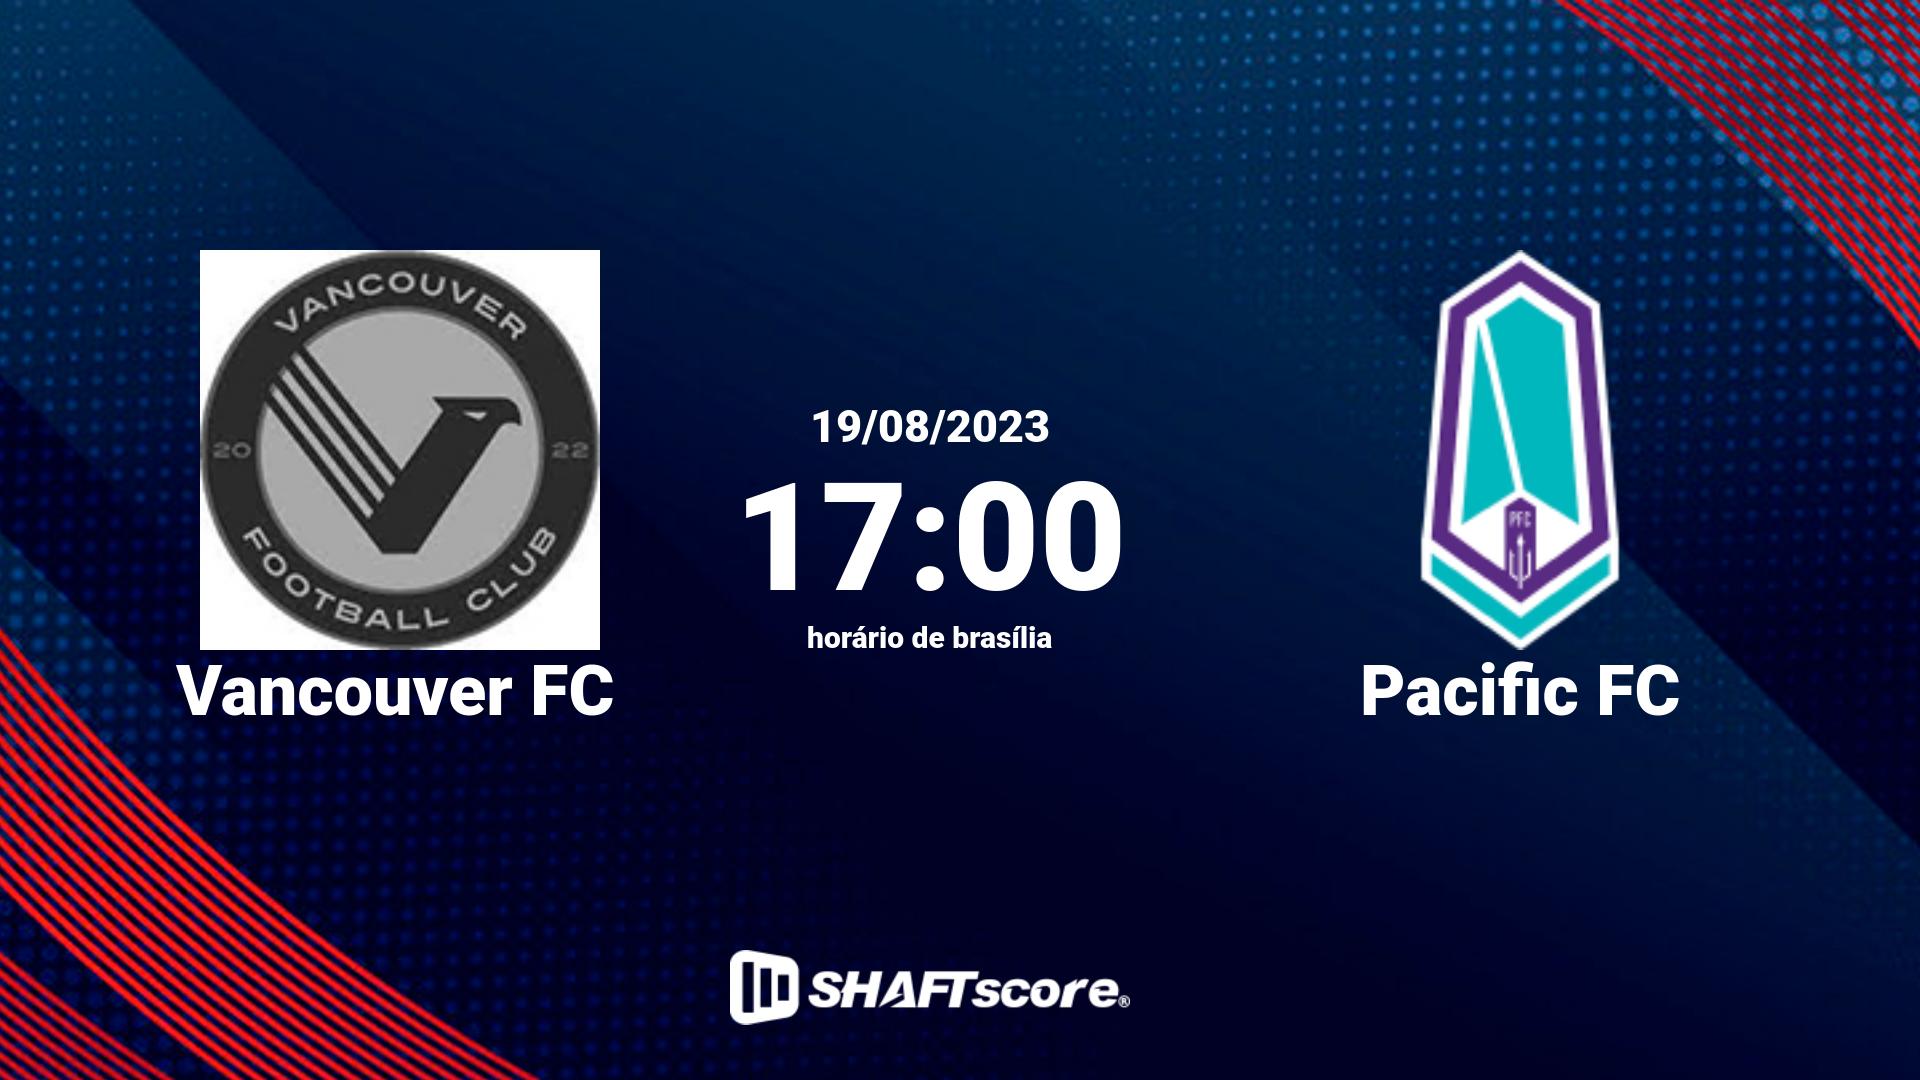 Estatísticas do jogo Vancouver FC vs Pacific FC 19.08 17:00